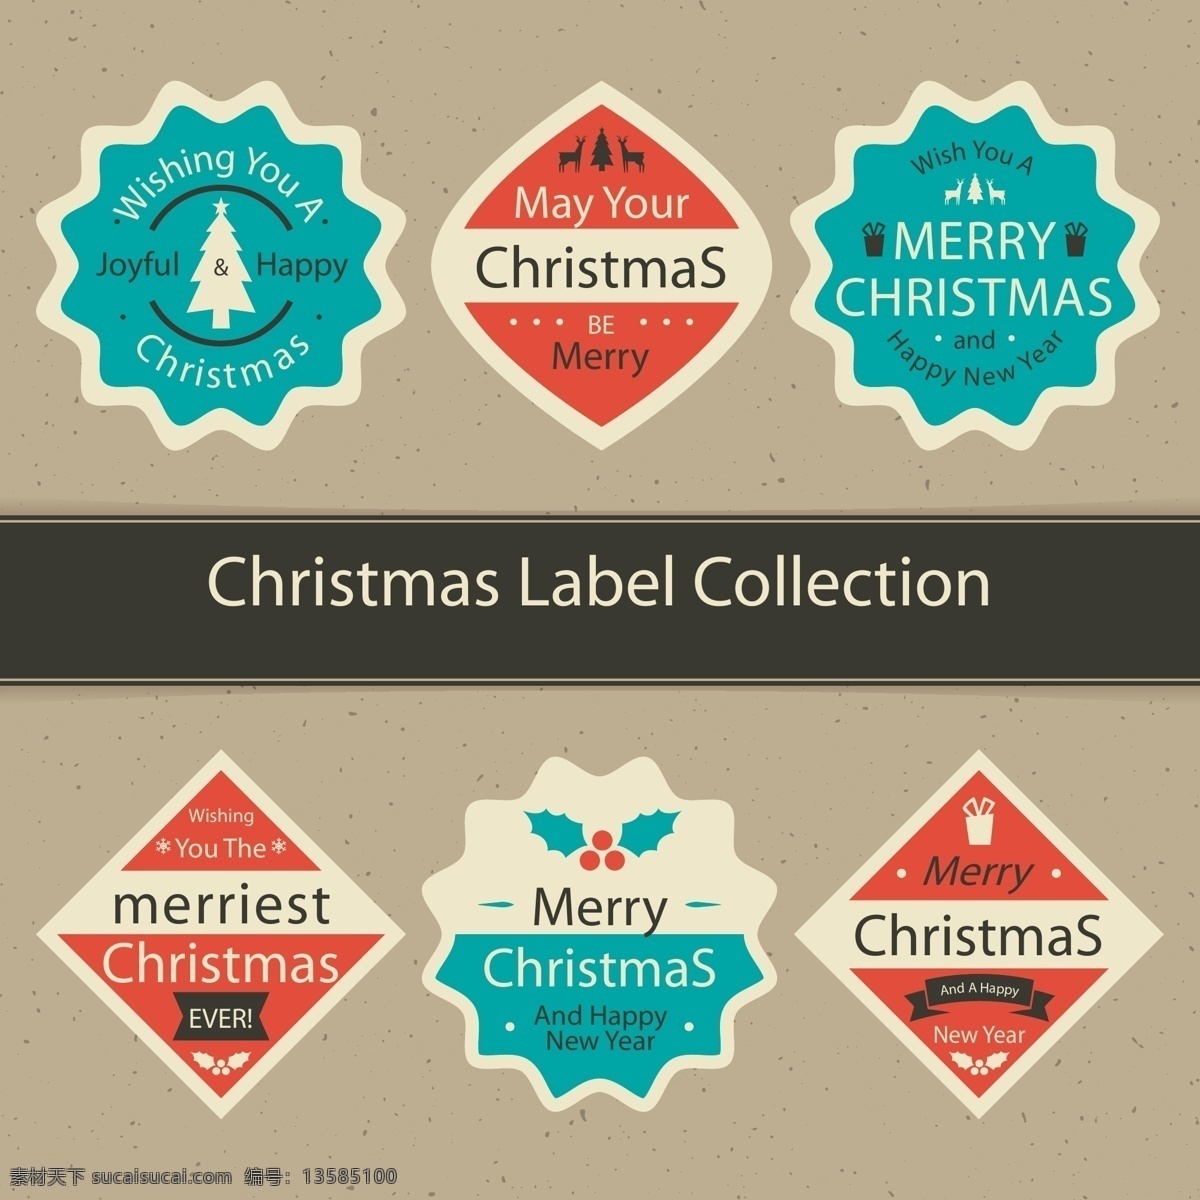 英文 经典 圣诞 标签 蓝色 红色 圣诞节 矢量素材 圣诞树 礼物